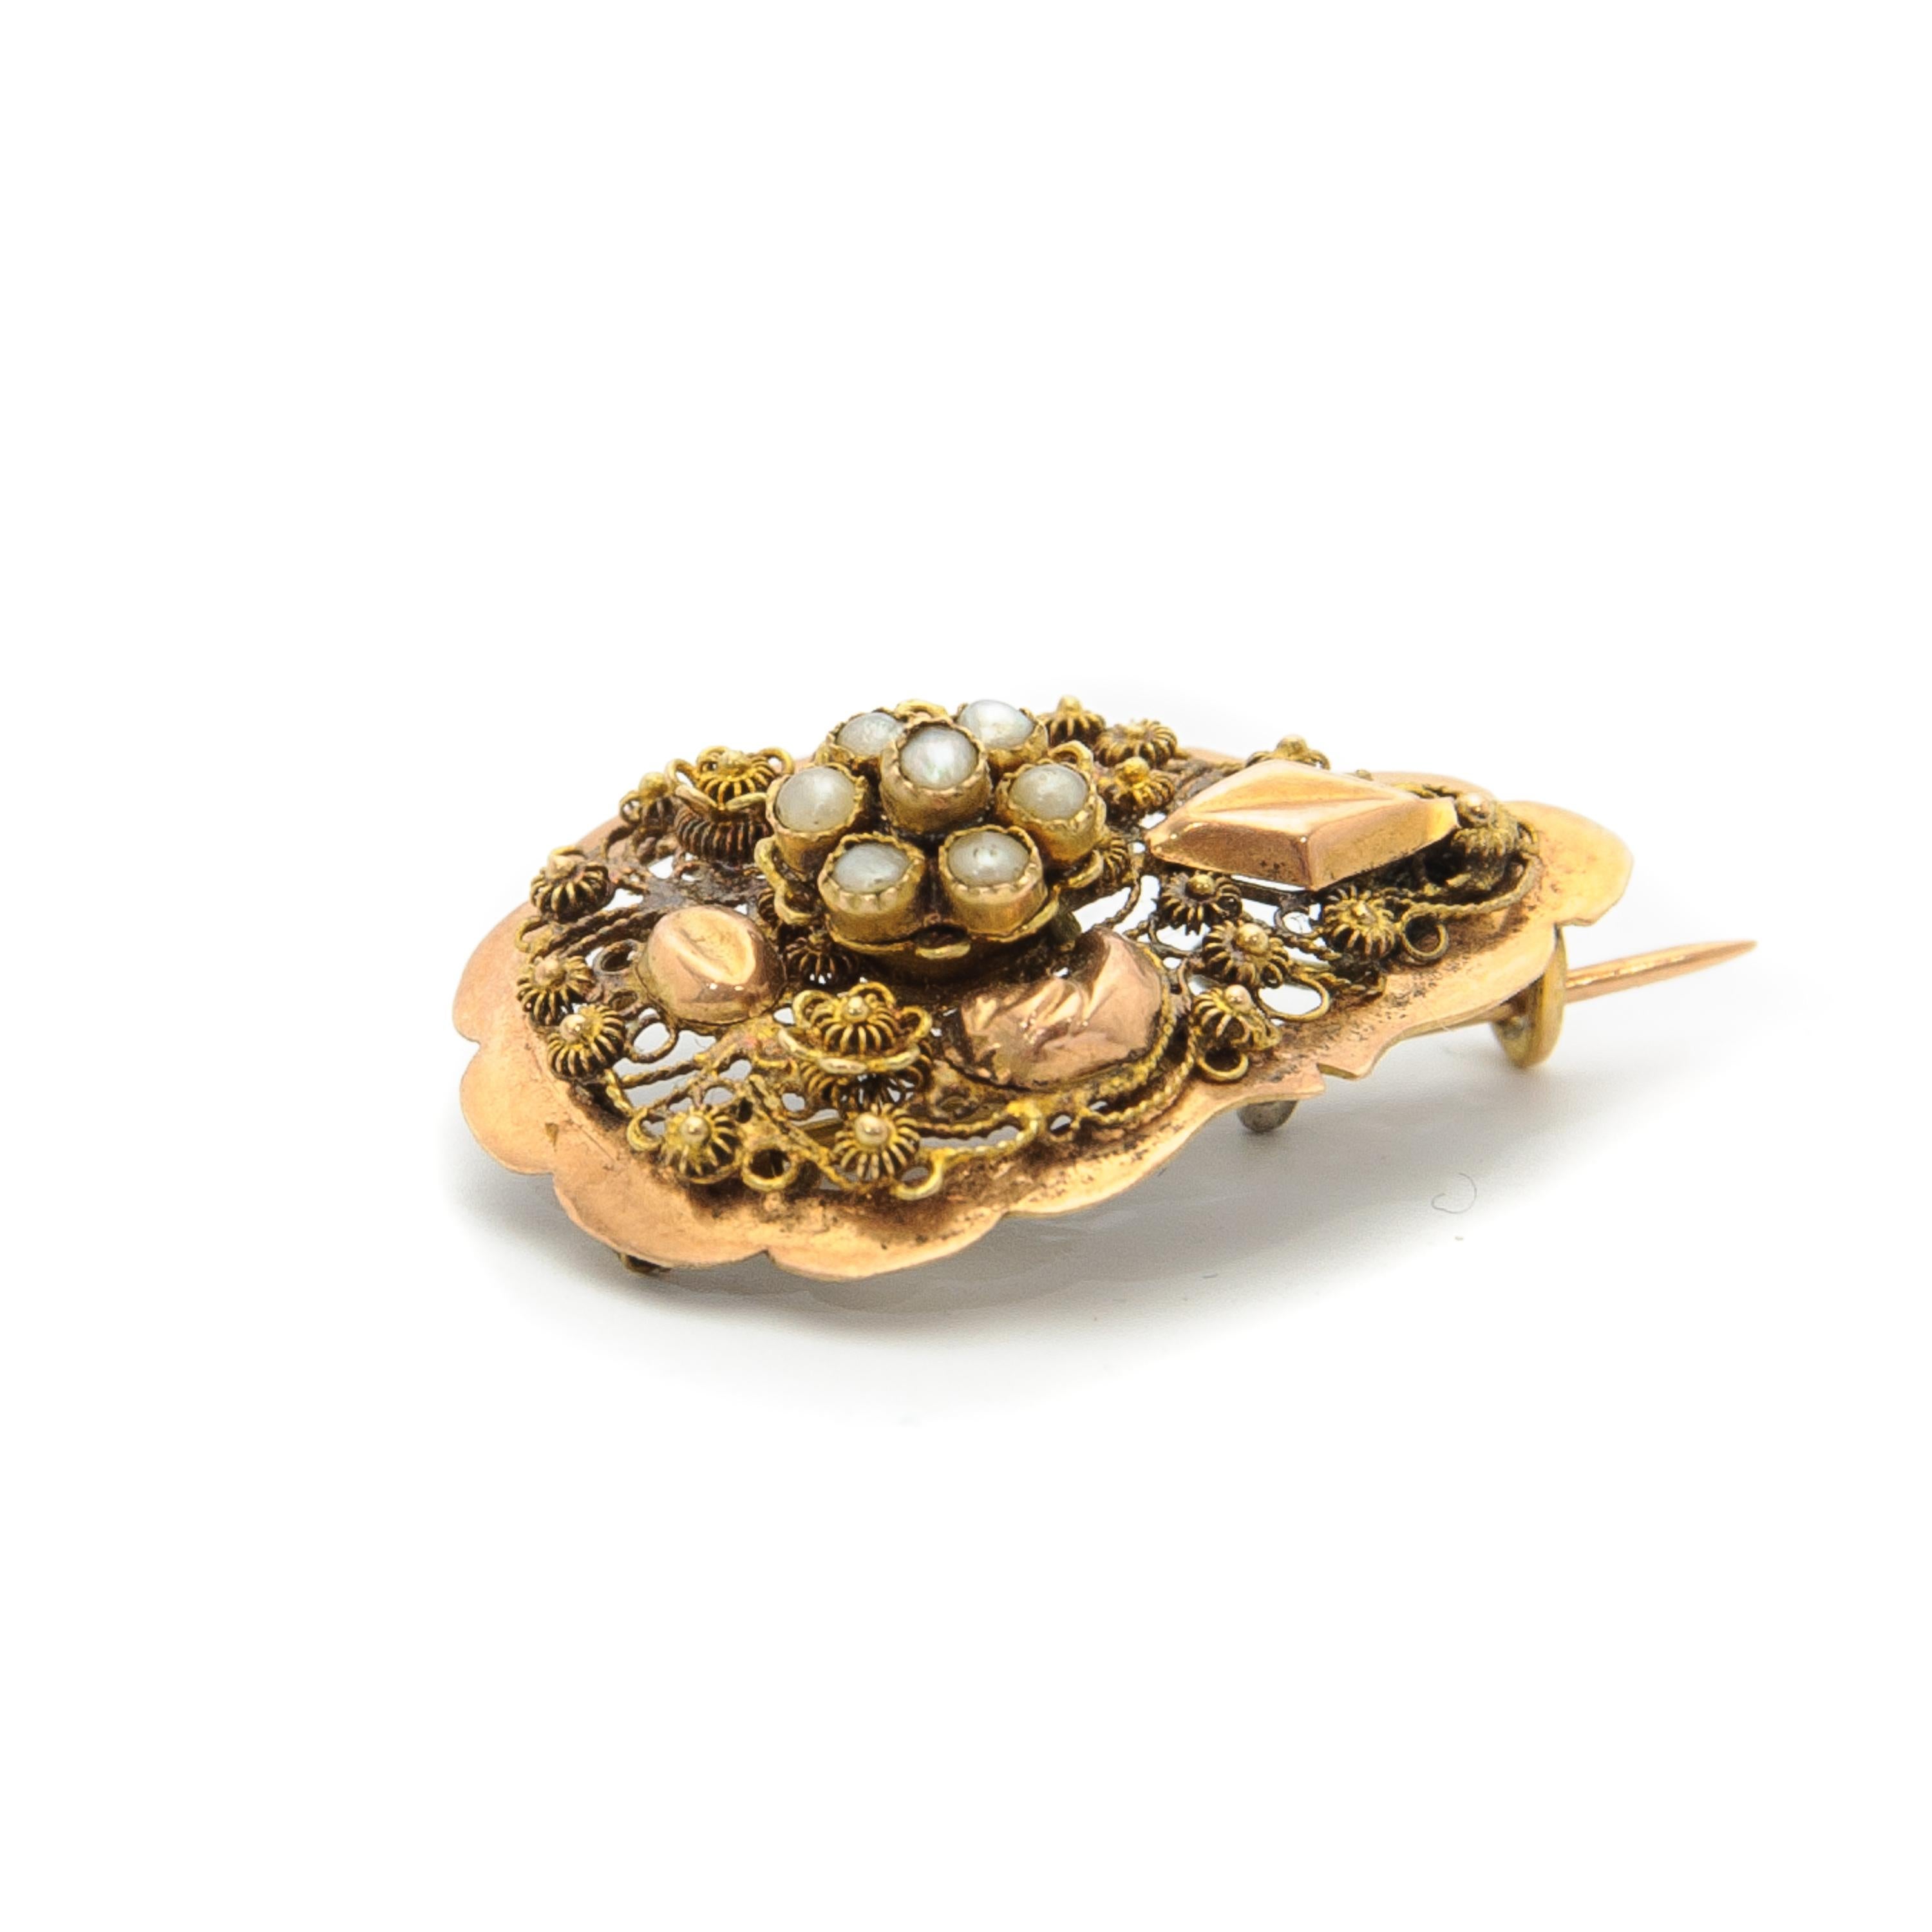 Broche ancienne du 19e siècle en forme de goutte, créée en or 14 carats. La broche est sertie de sept perles de rocaille et la surface est magnifiquement détaillée avec un fin travail de filigrane et de cannetille. La cannetille se compose